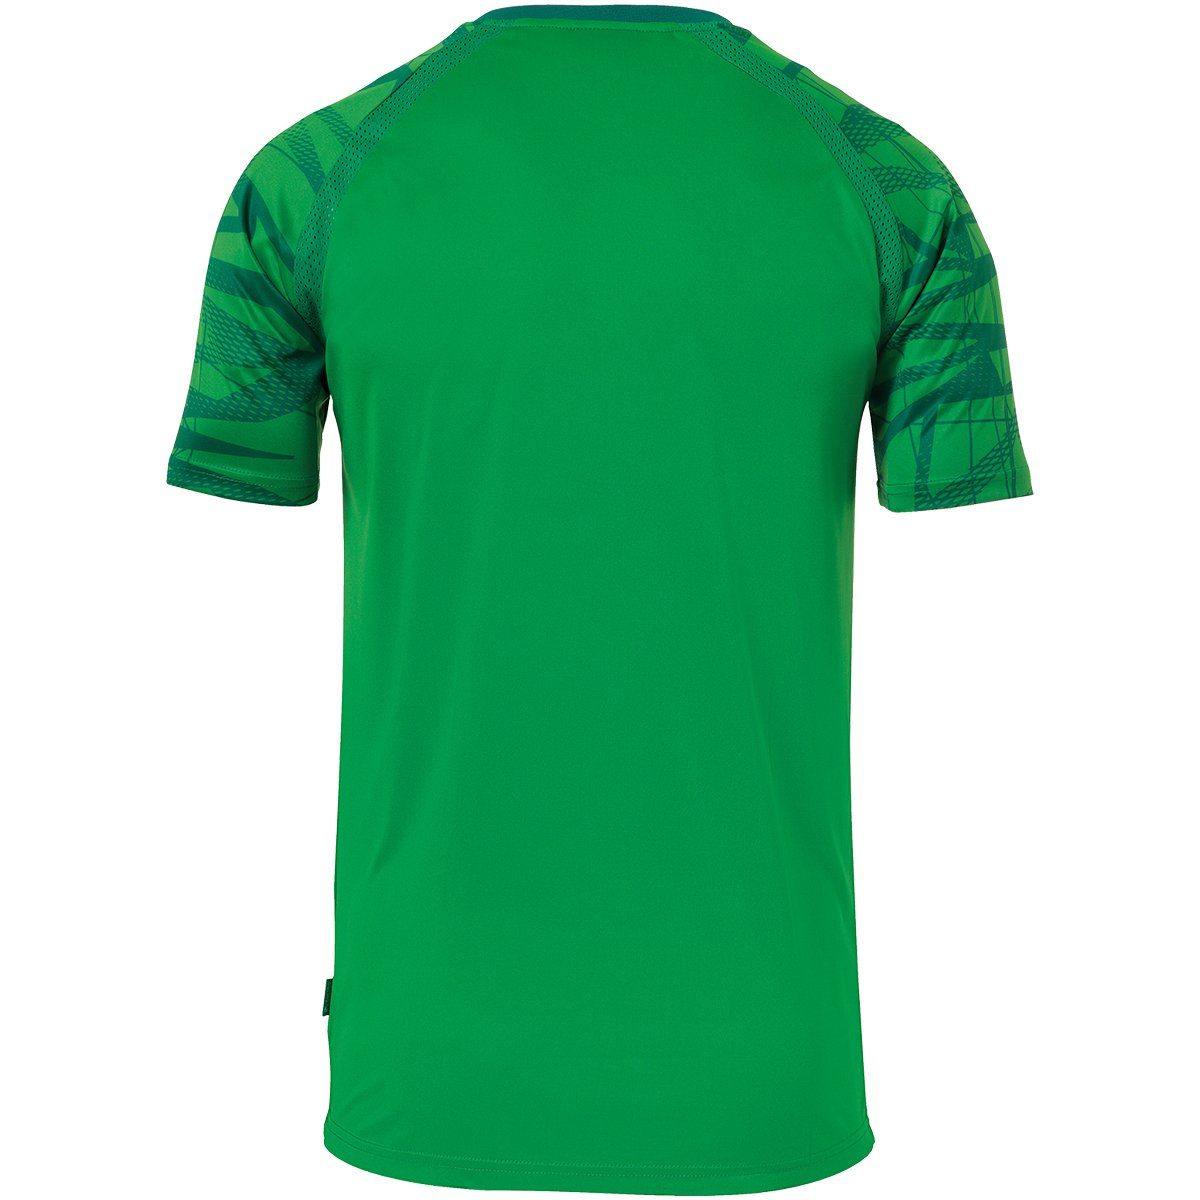 TRIKOT GOAL grün/lagune KURZARM Trainings-T-Shirt Trainingsshirt uhlsport atmungsaktiv uhlsport 25